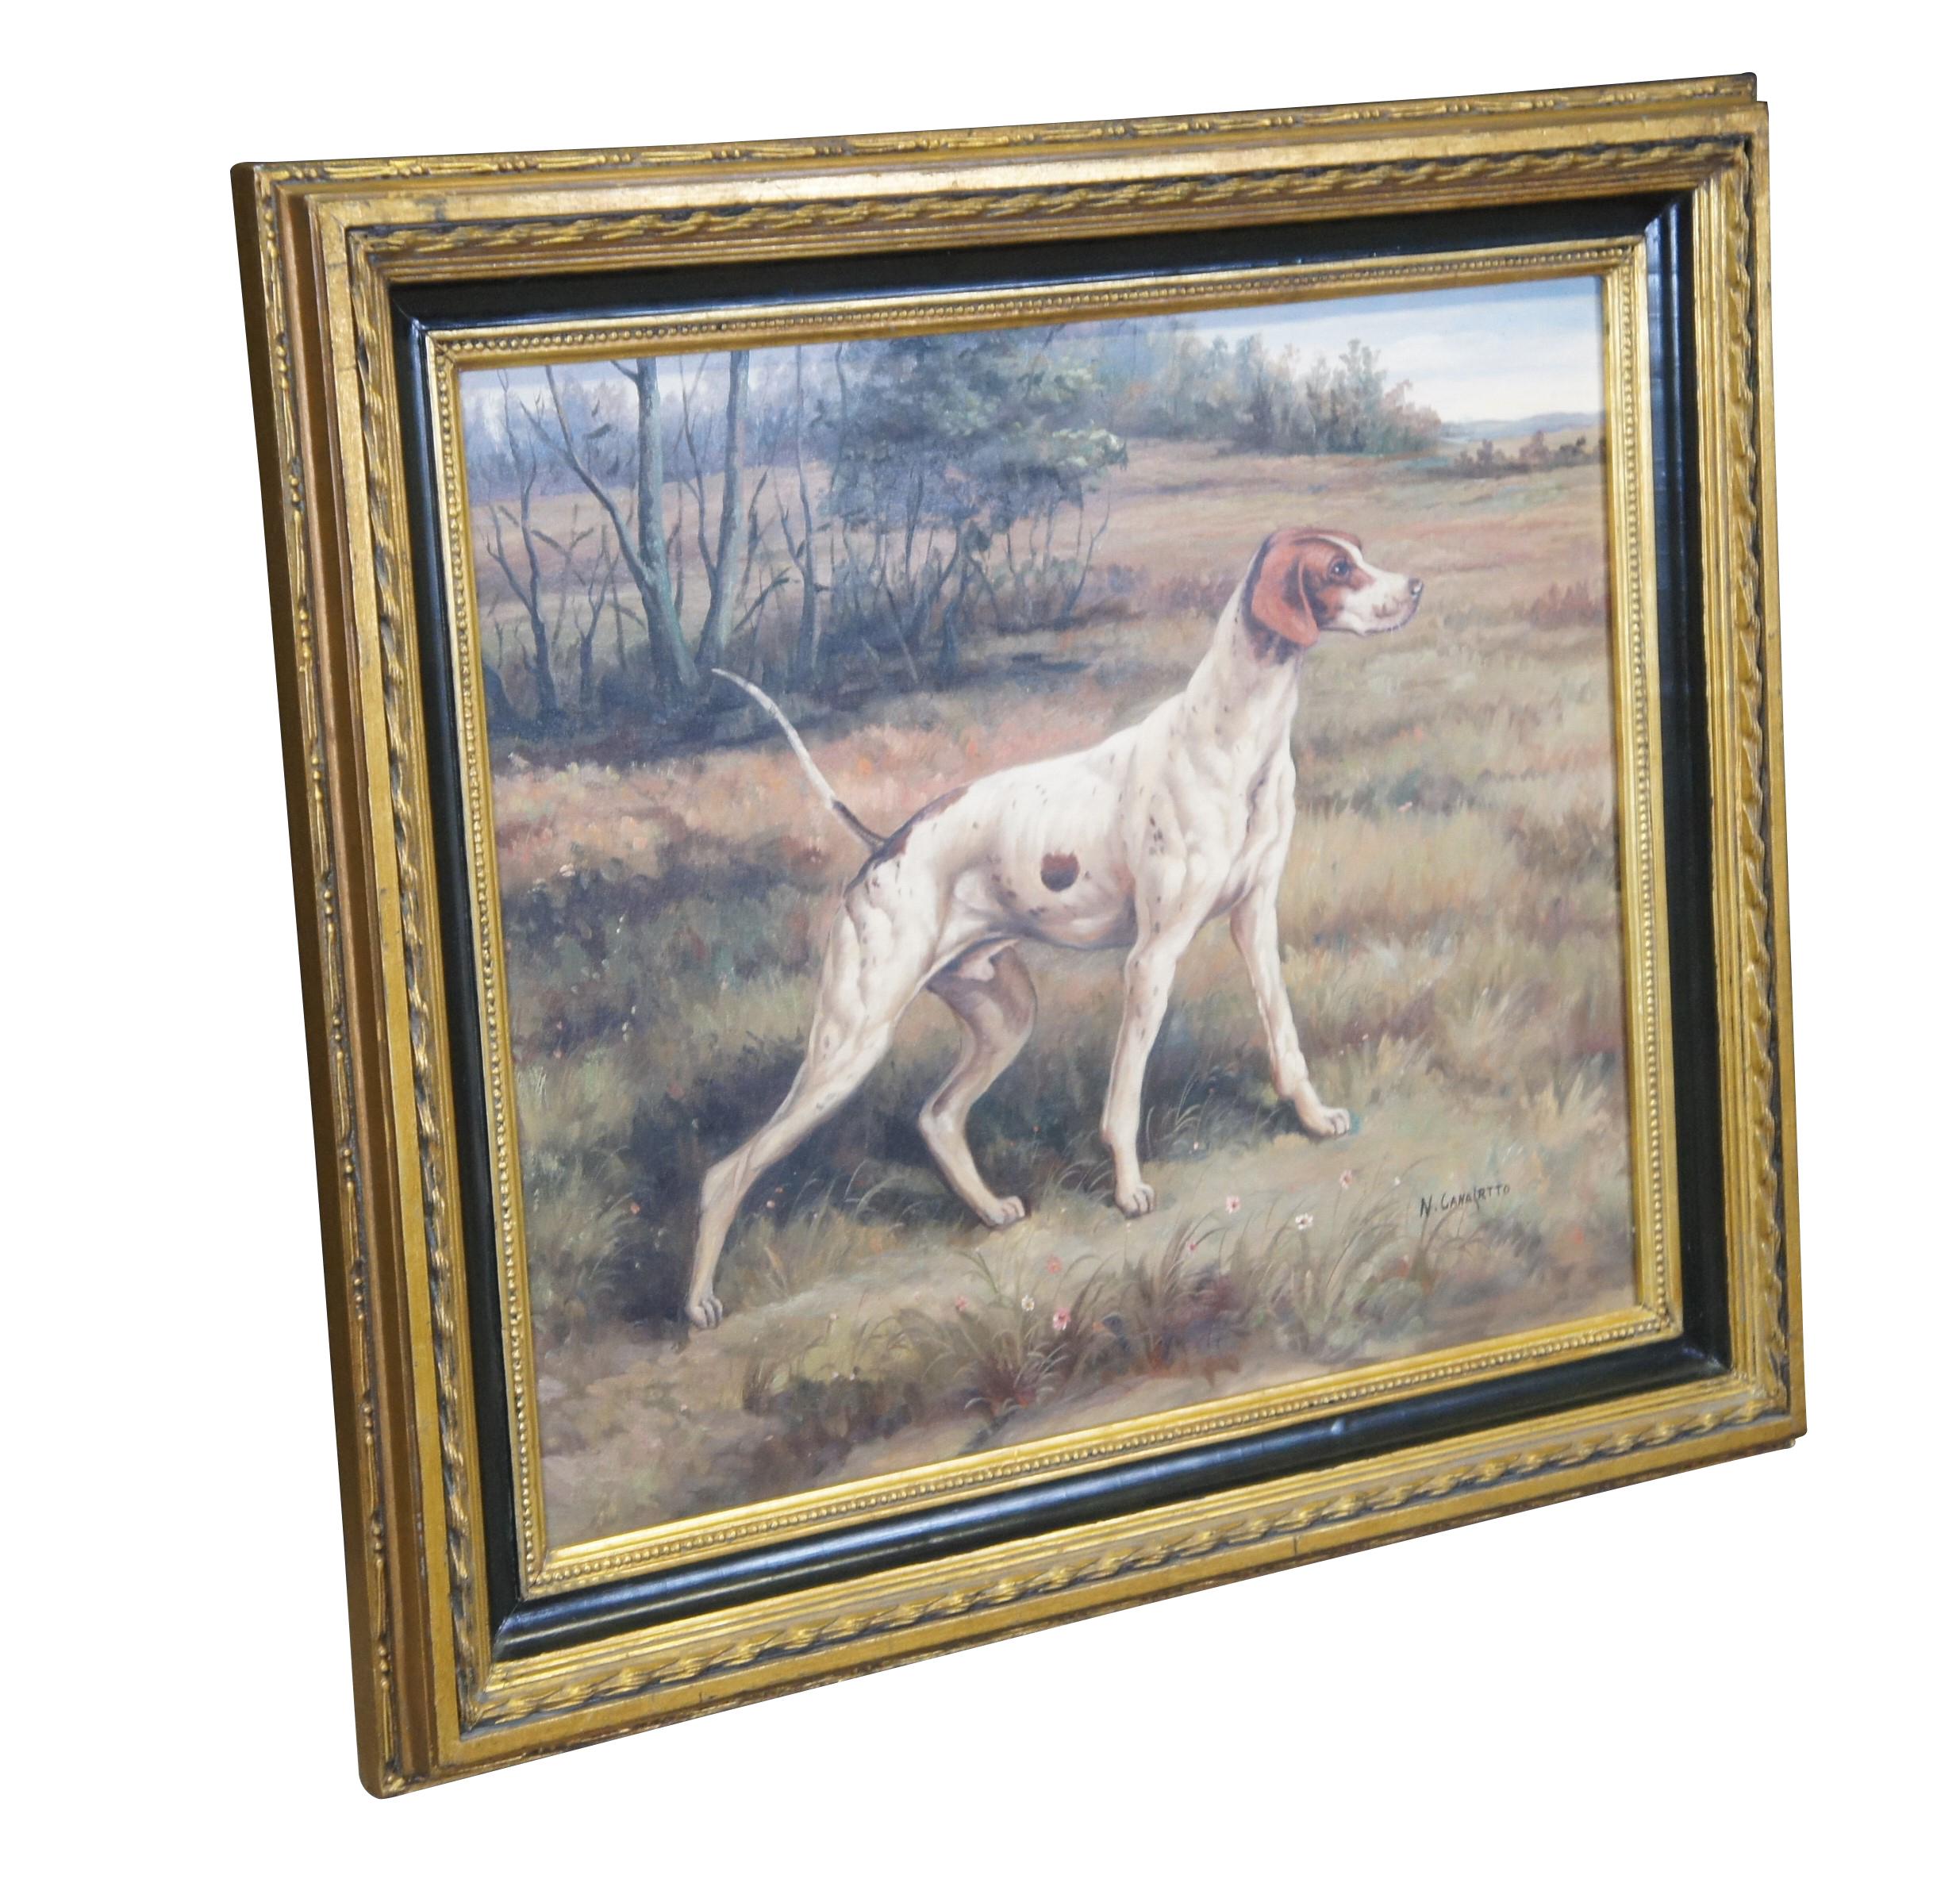 Vintage Pointer Hunting Dog Landscape Portrait Peinture à l'huile sur toile 31